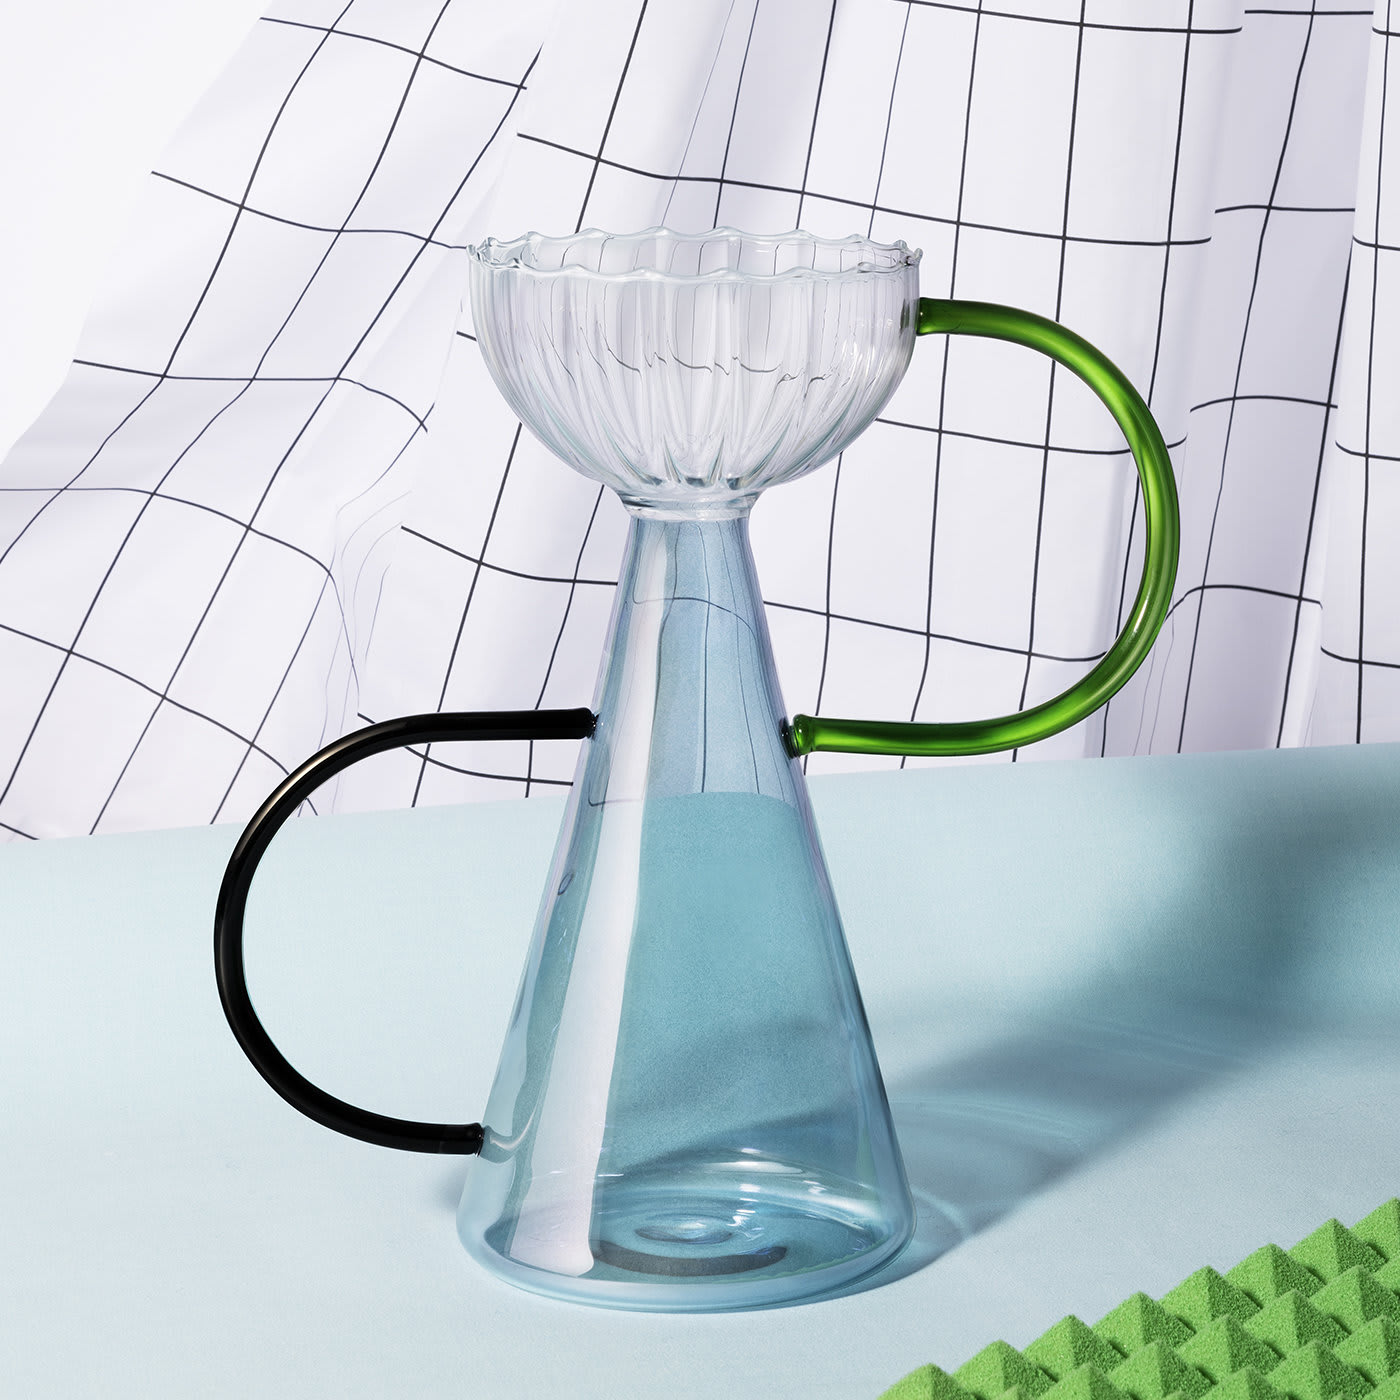 Arabesque 04 Hand-Blown Glass Vase - Serena Confalonieri